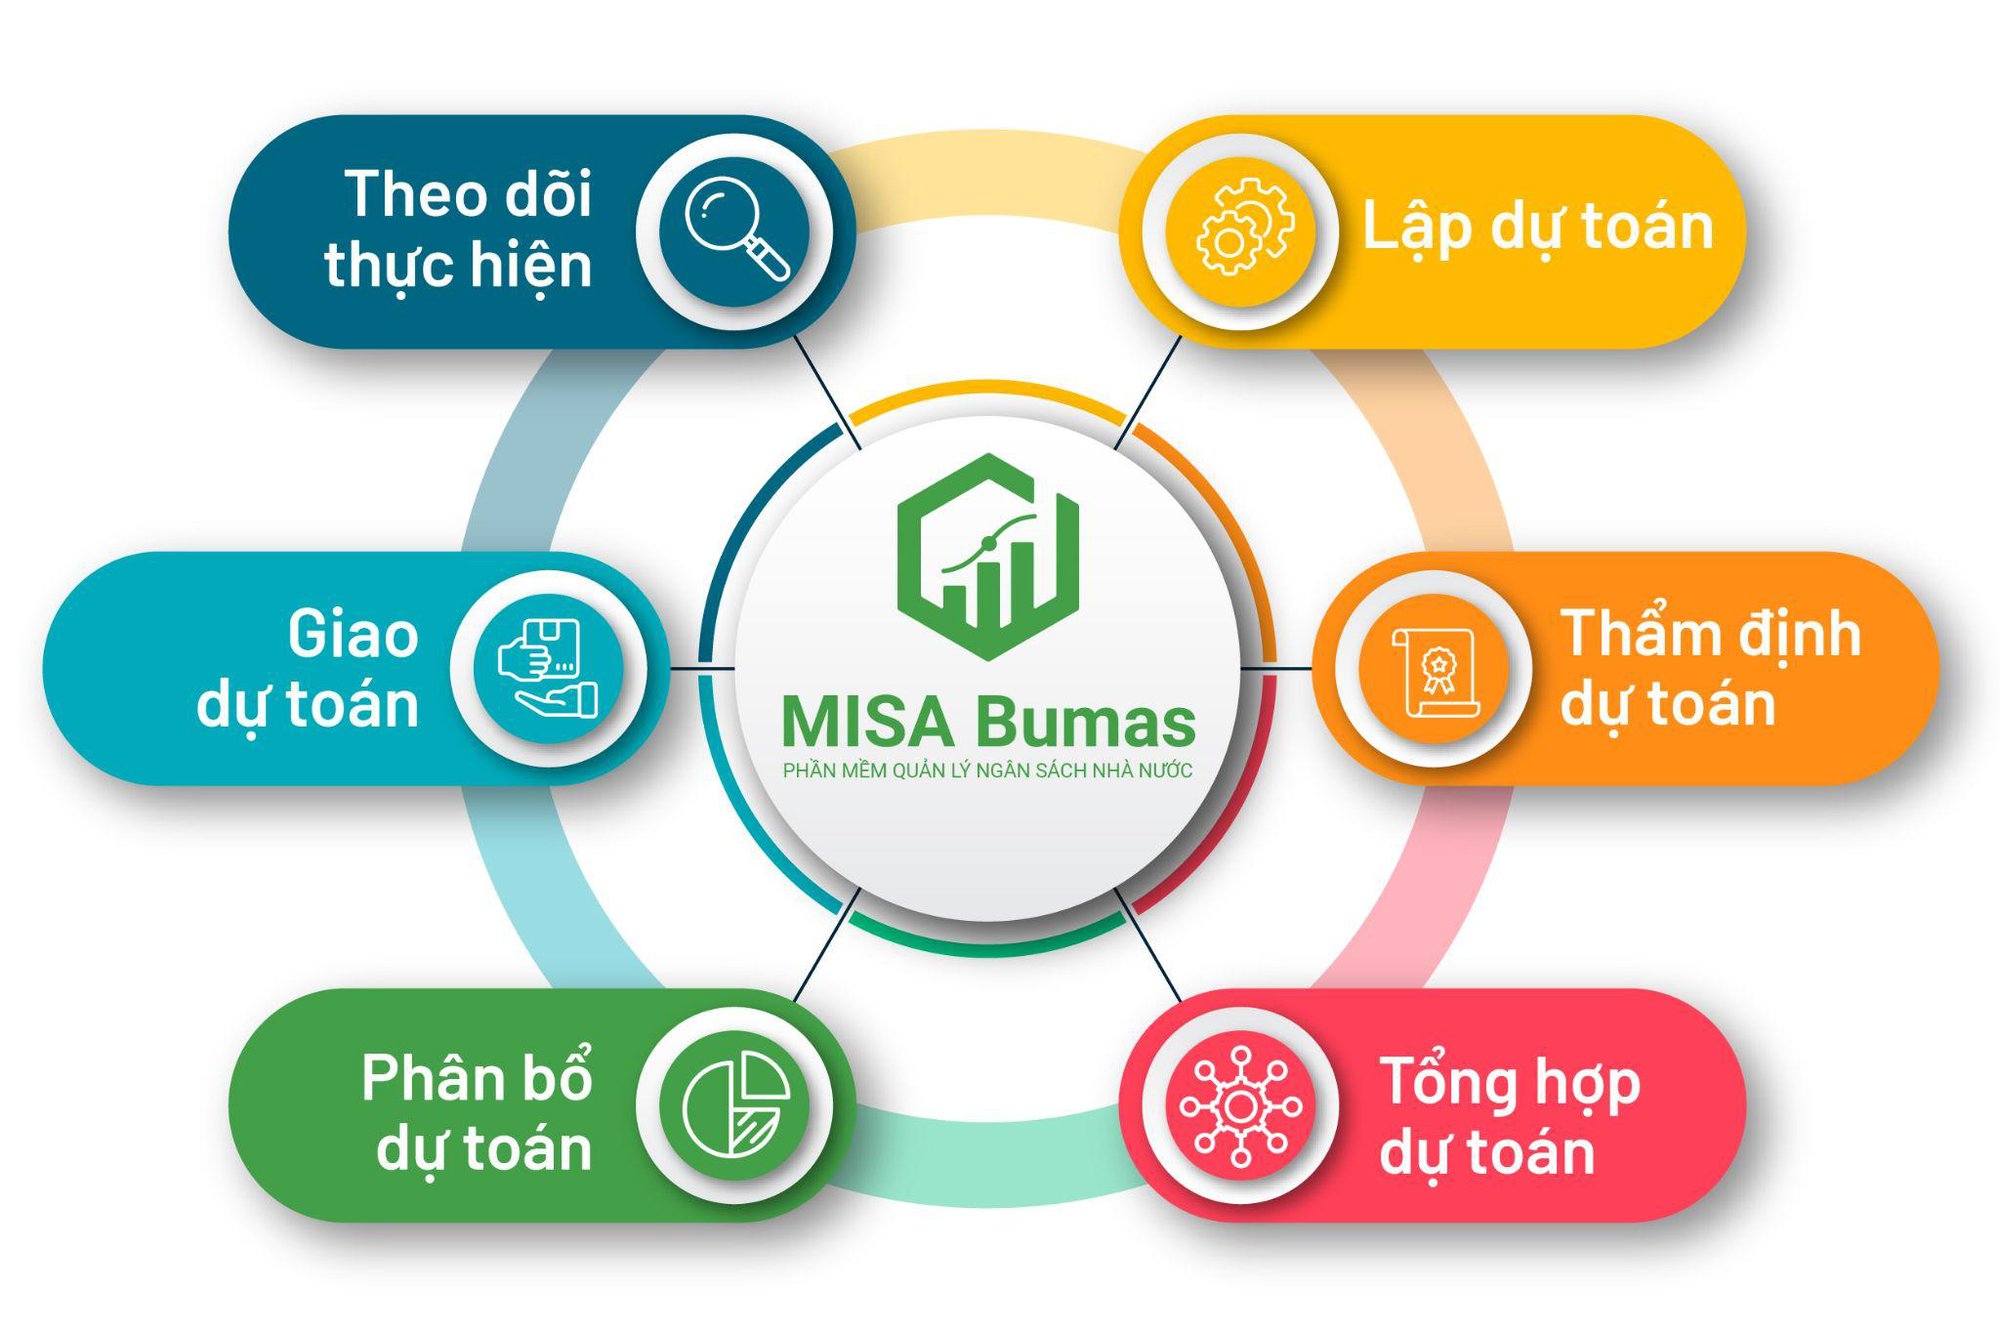 Phần mềm quản lý ngân sách Nhà nước MISA Bumas xuất sắc giành giải thưởng Chuyển đổi số Việt Nam 2022 - Ảnh 2.